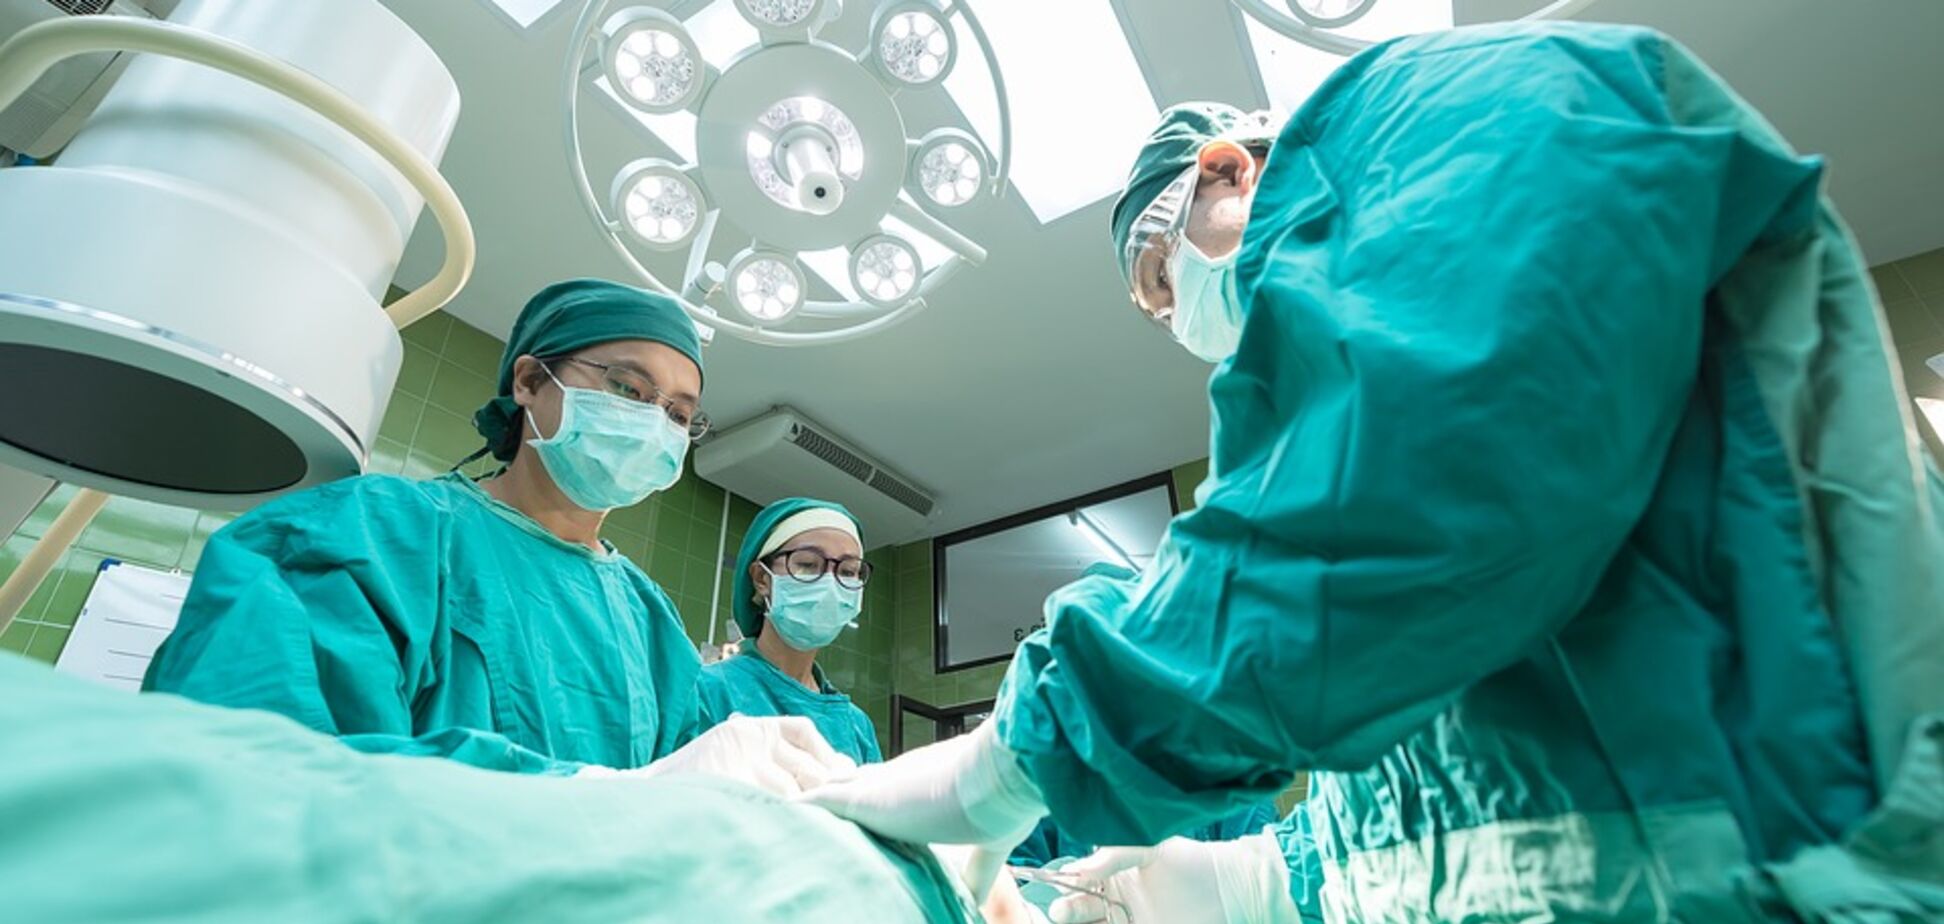 Прорыв в медицине: врачи впервые сделали пересадку пениса с мошонкой